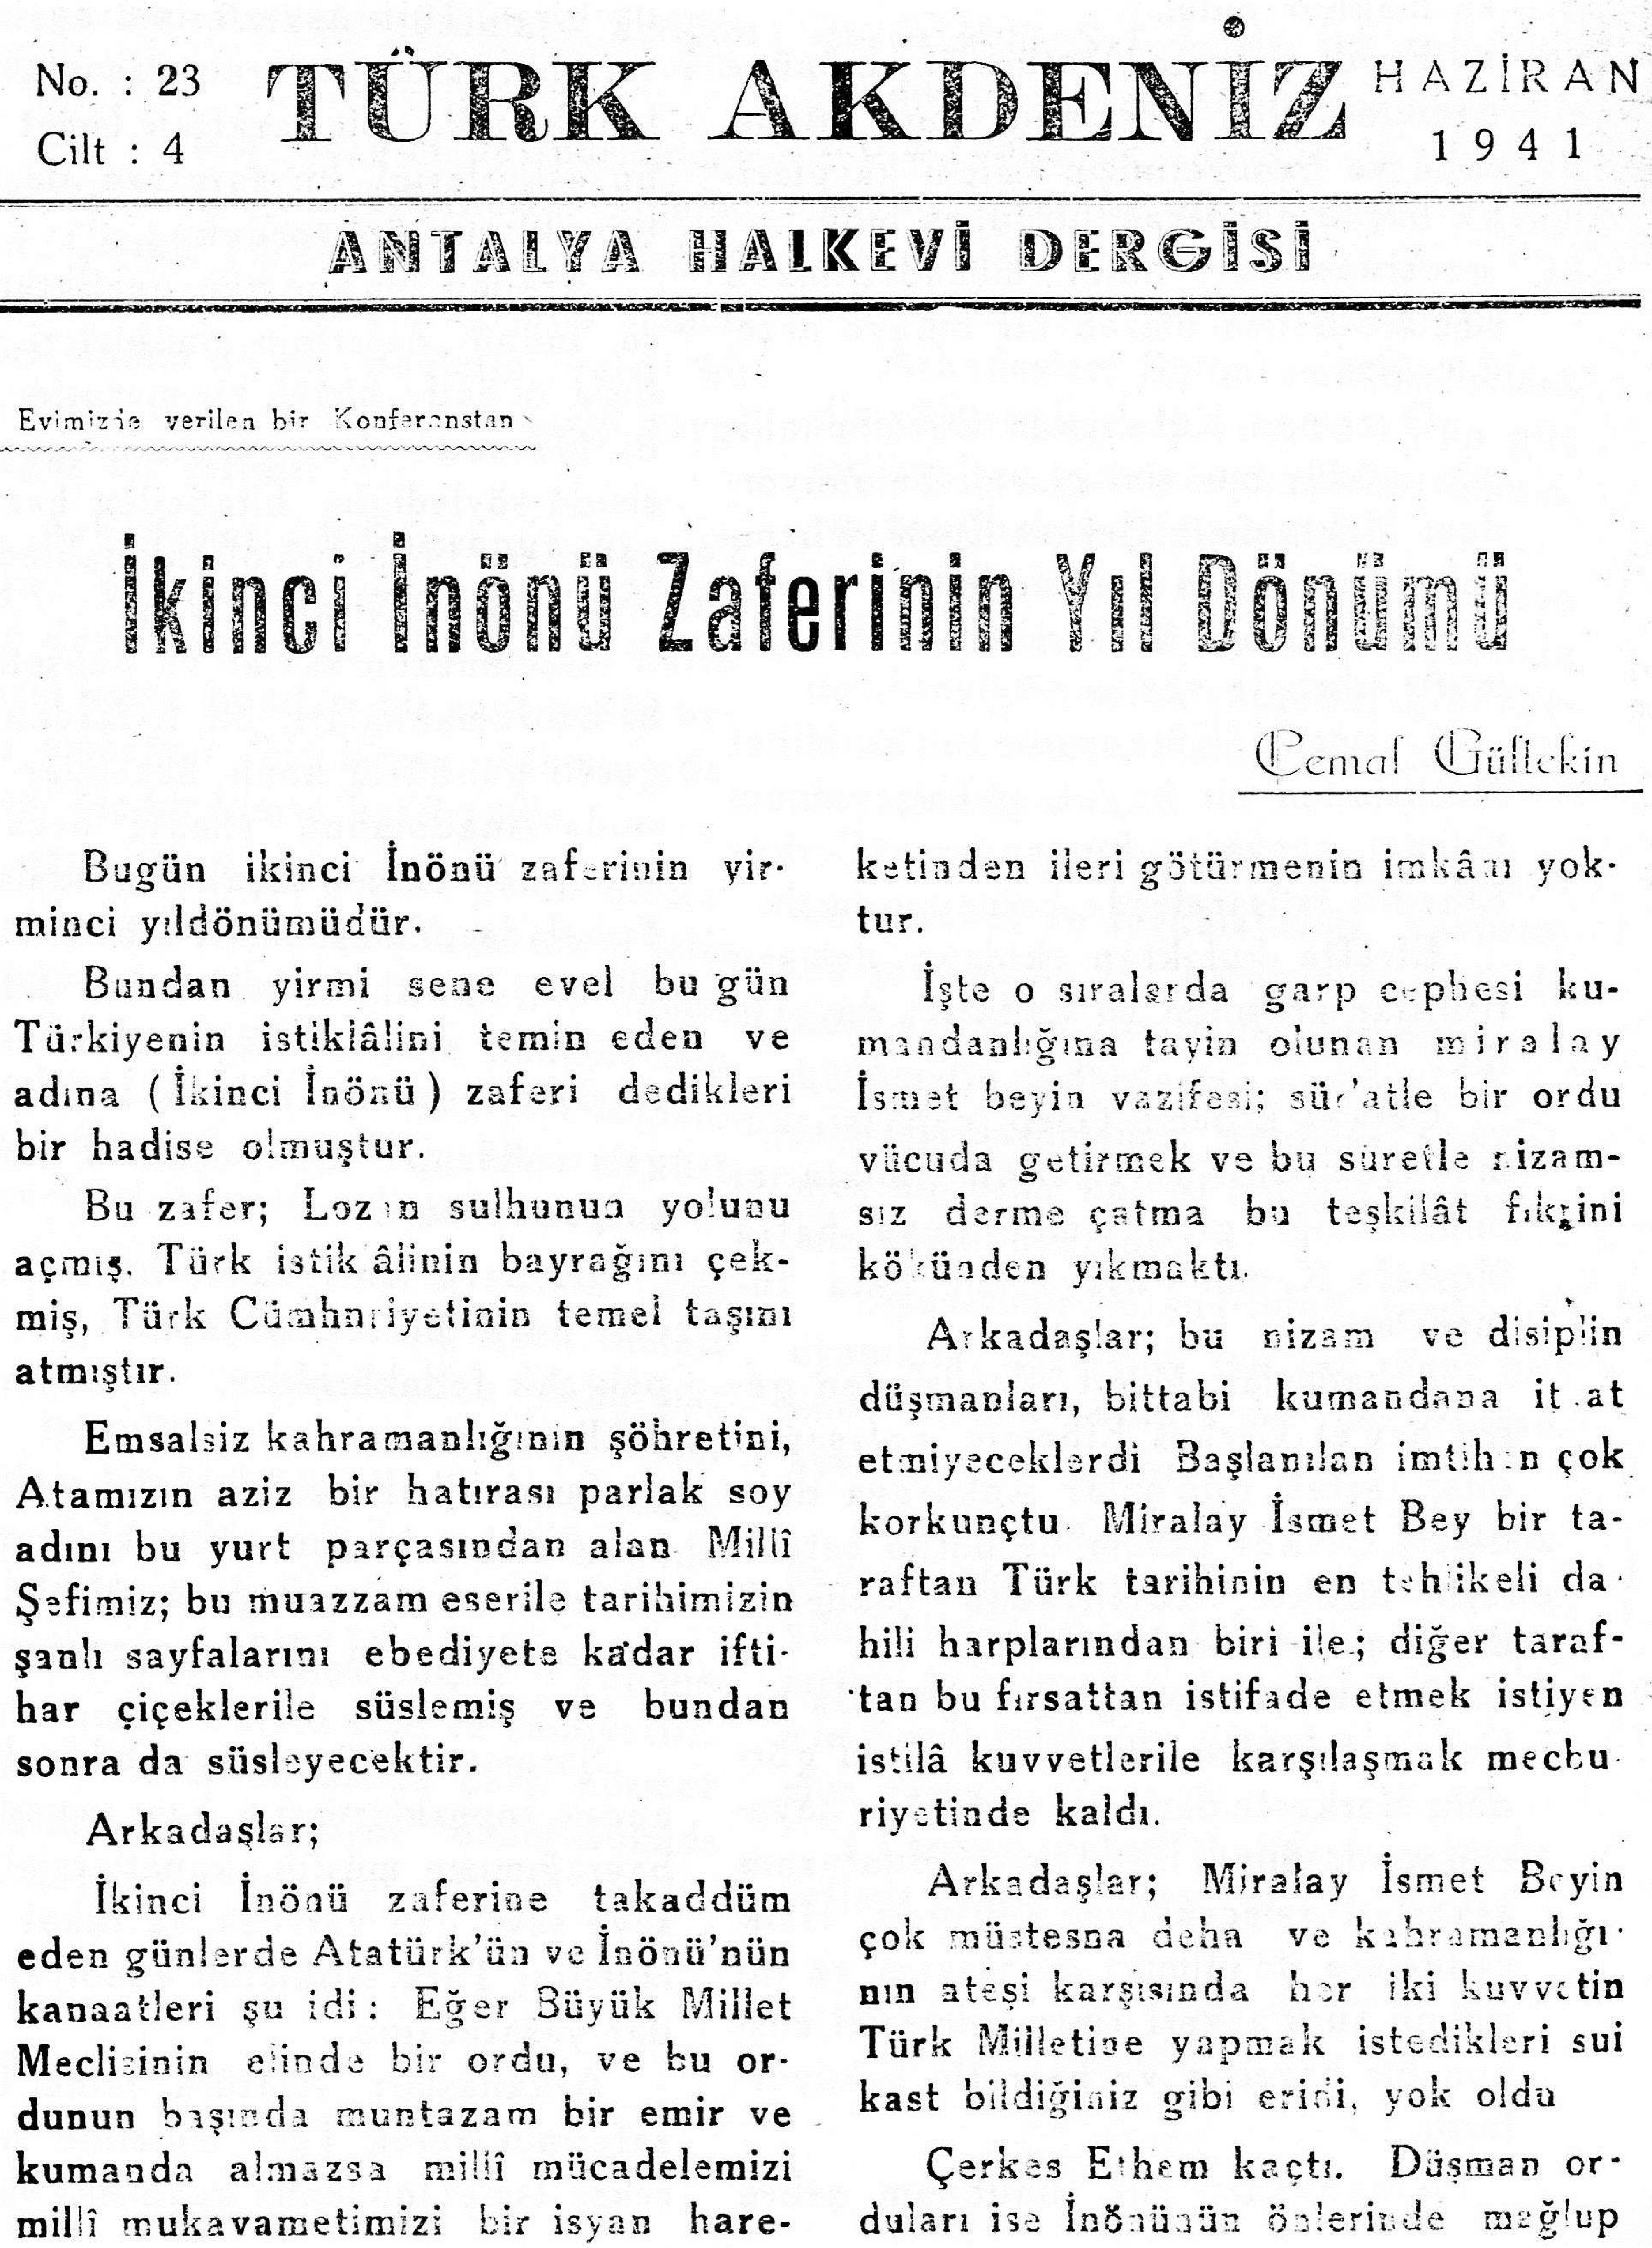 he-turk-akdeniz_1941-4(23)